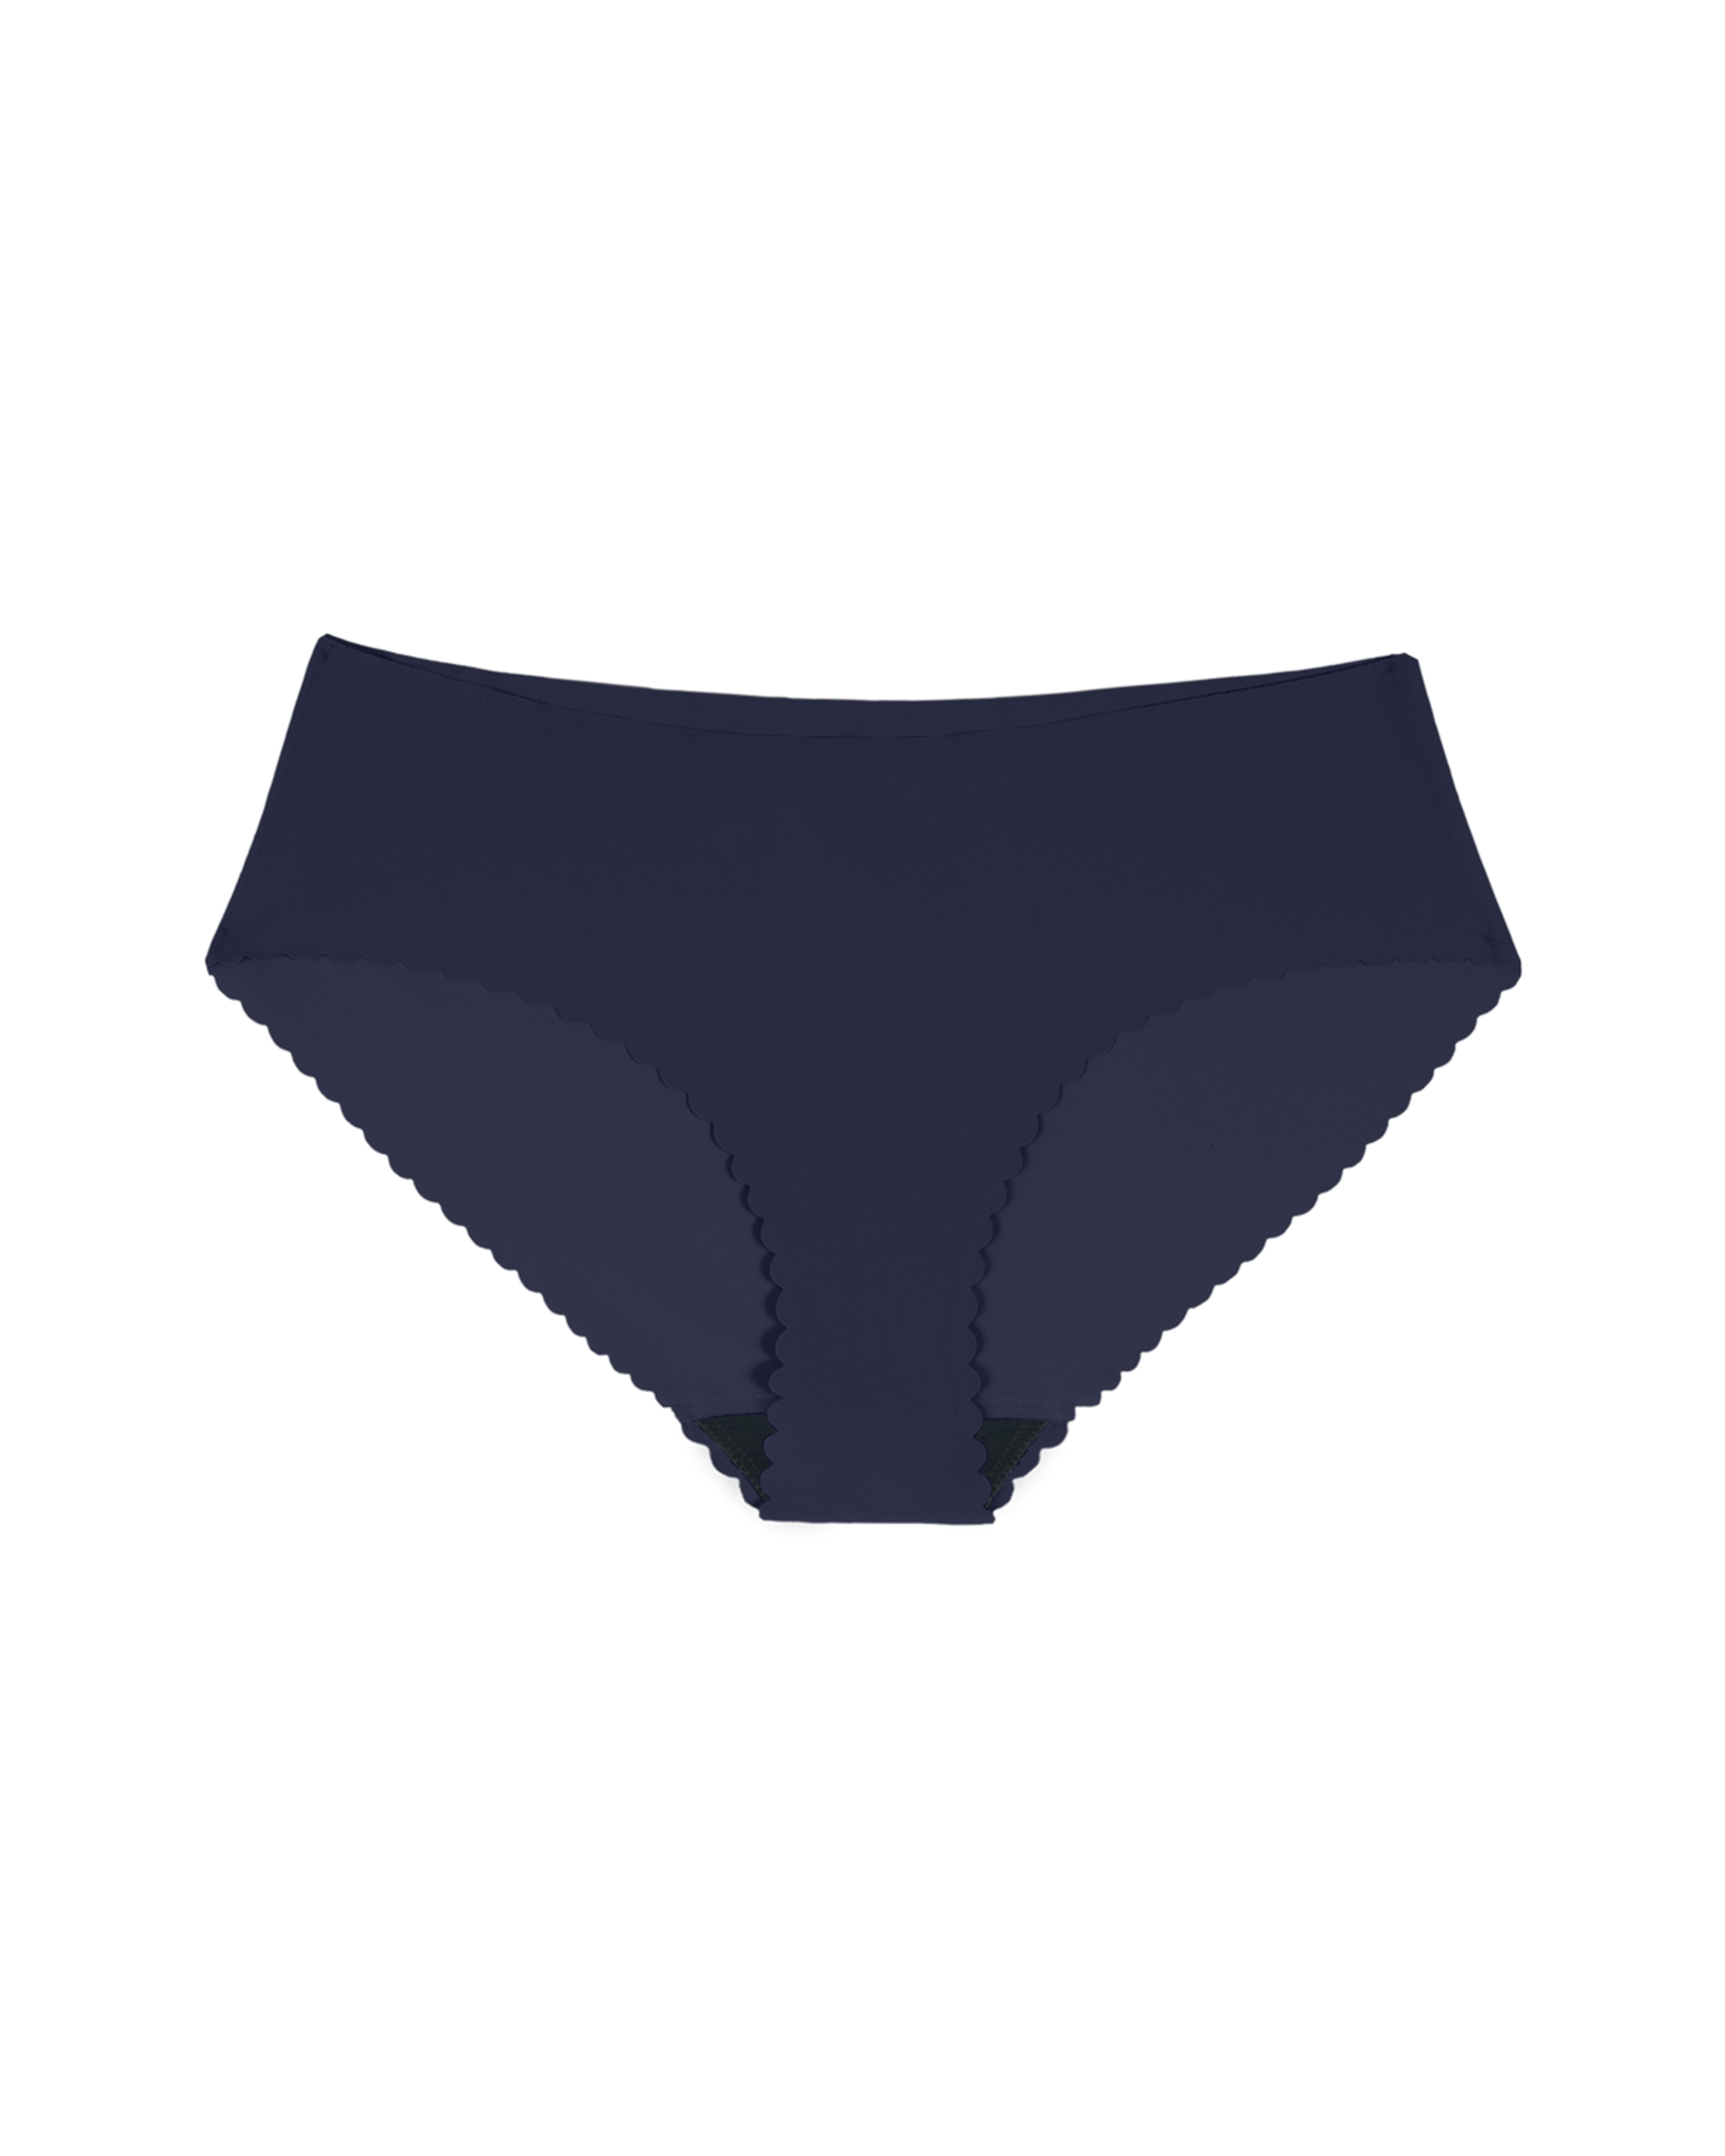 Period Resistant Underwear for Women